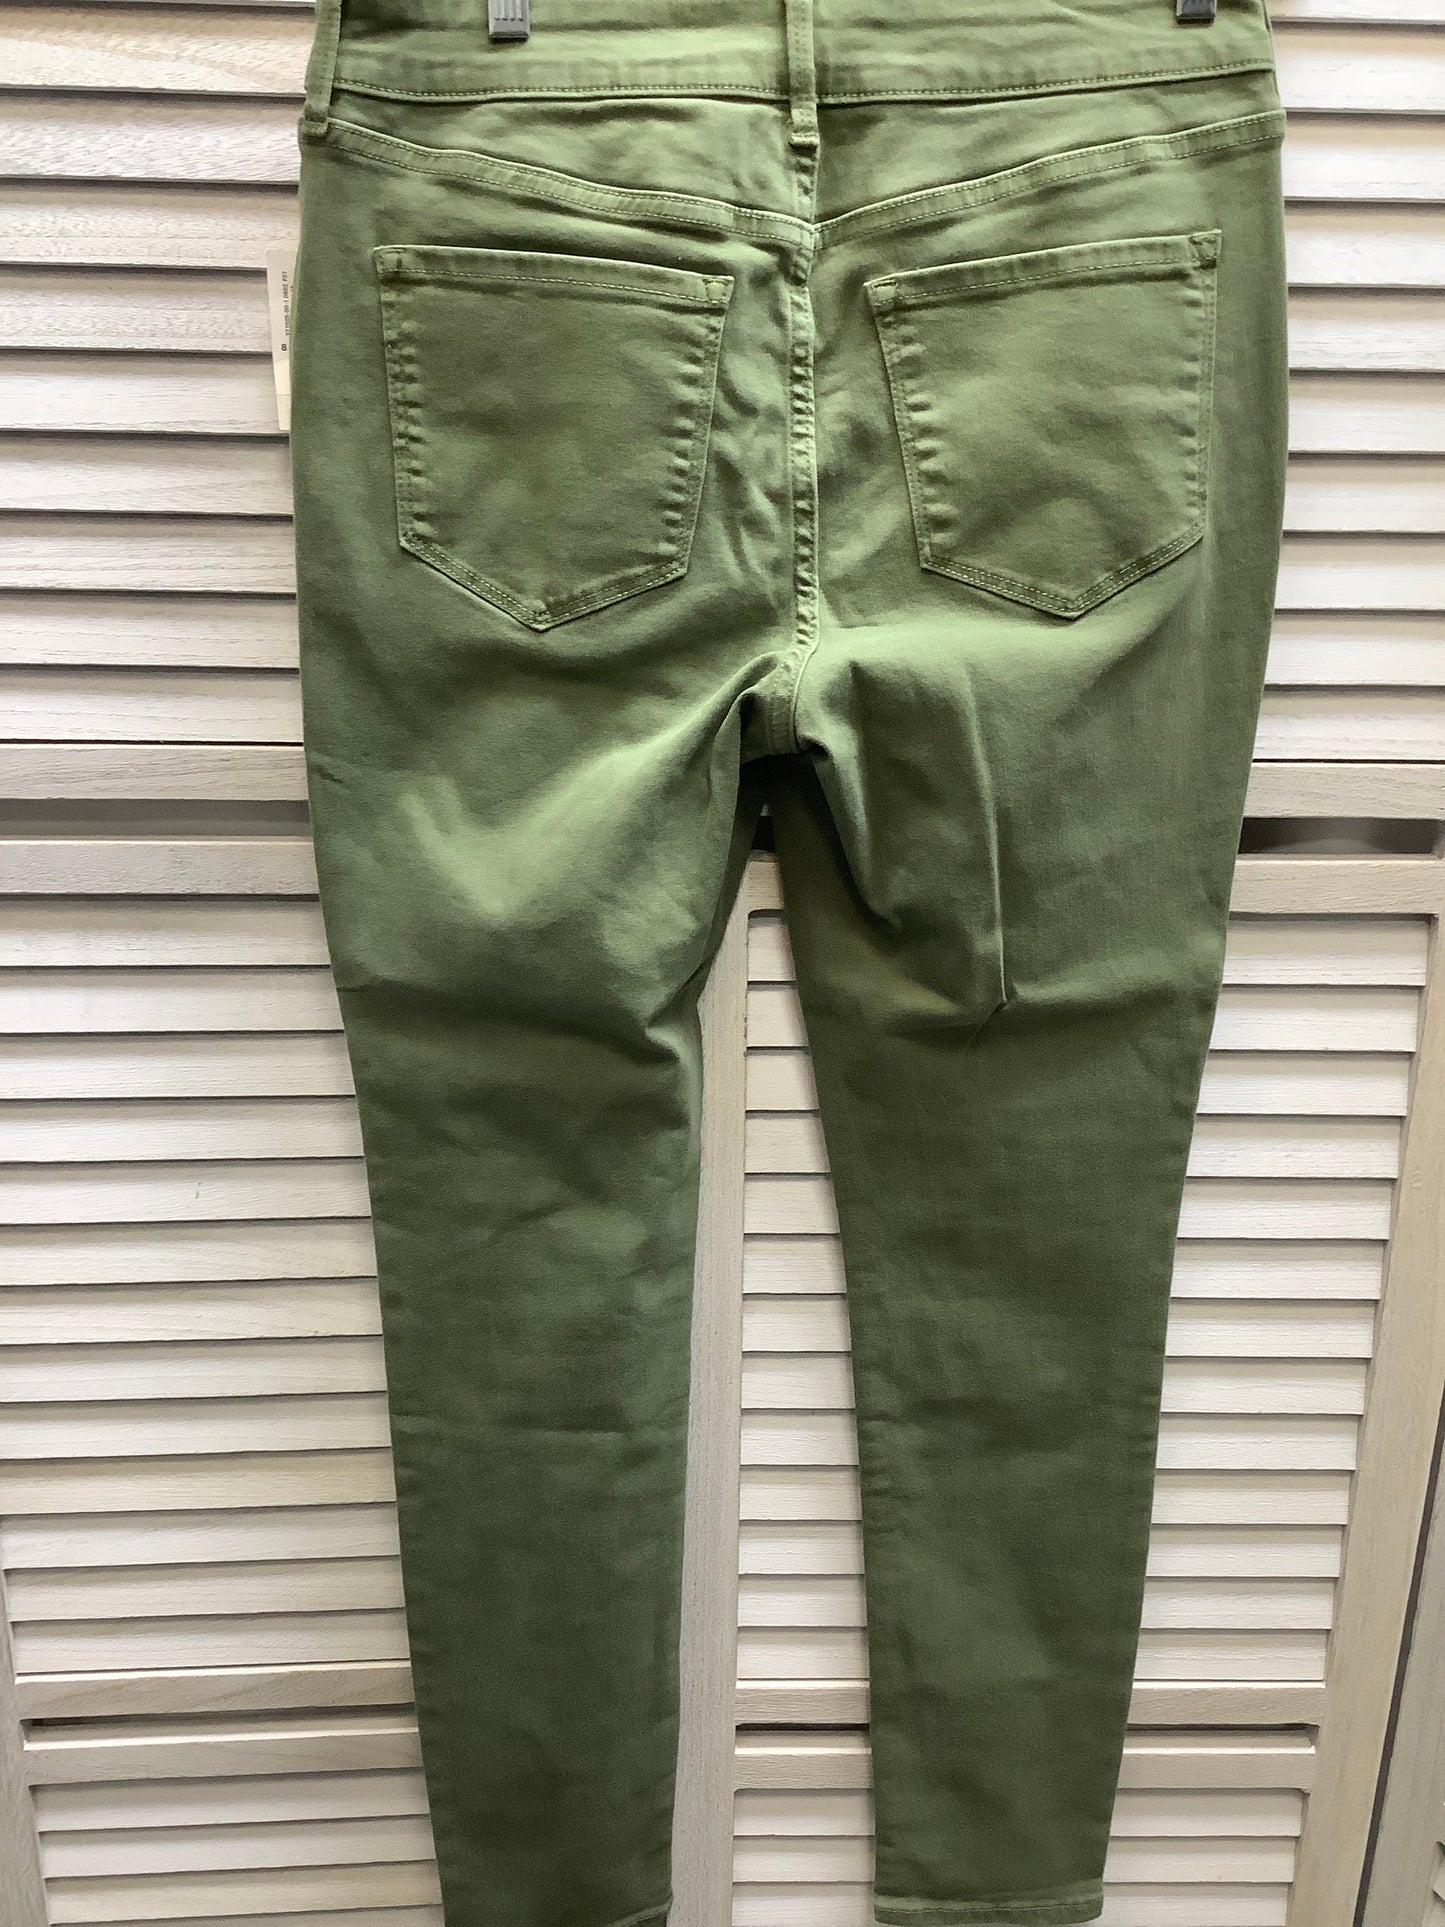 Green Denim Jeans Skinny Old Navy, Size 8